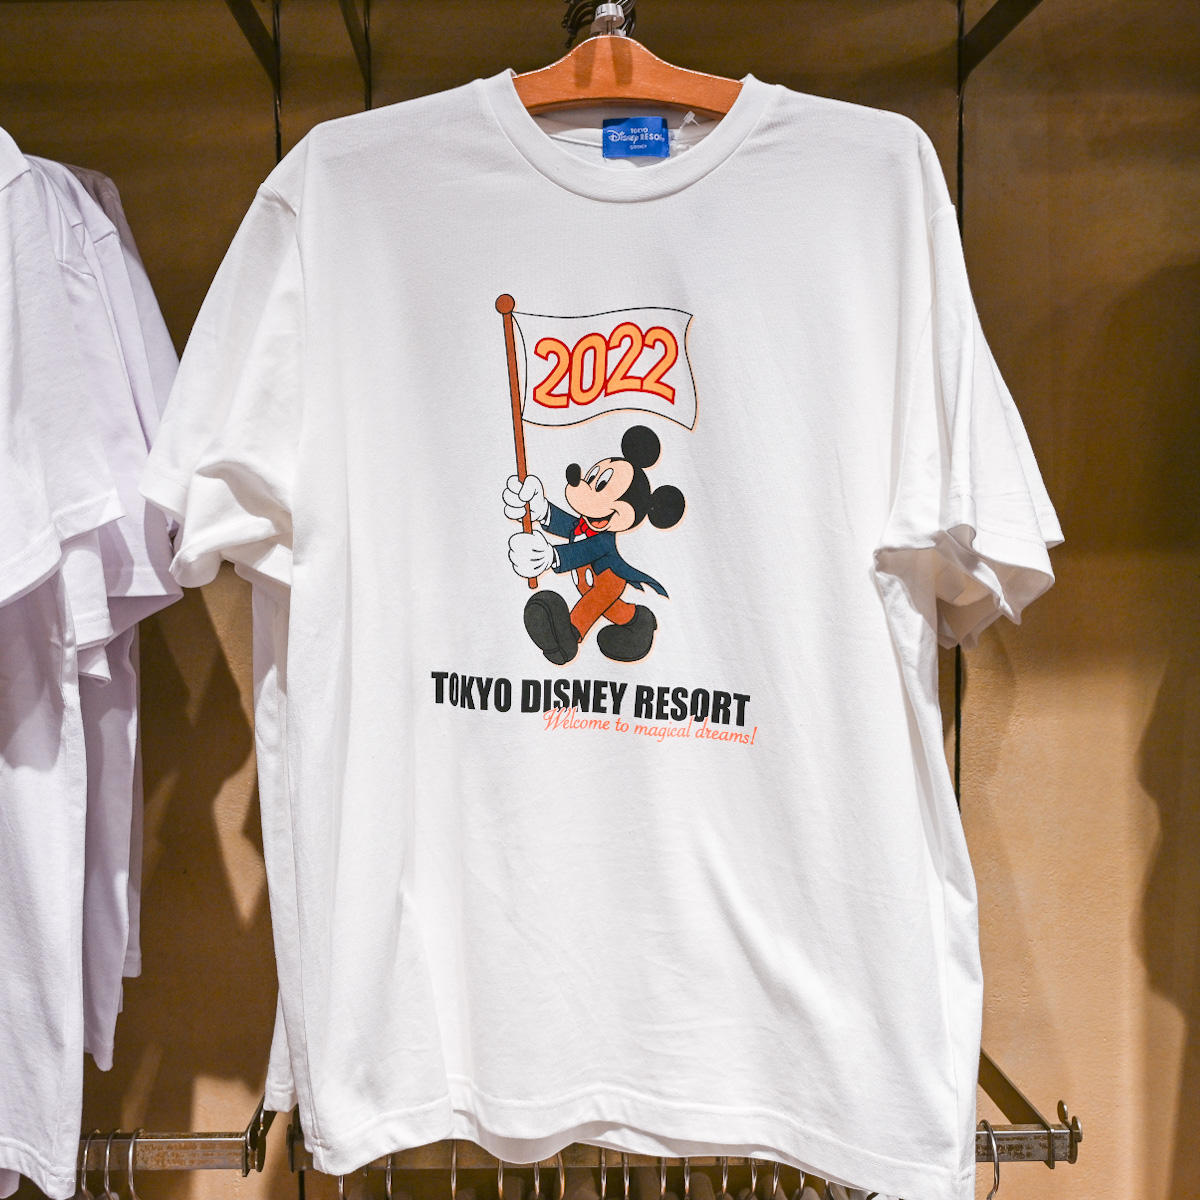 2022デザイン！東京ディズニーランド「ミッキーマウス」Tシャツ